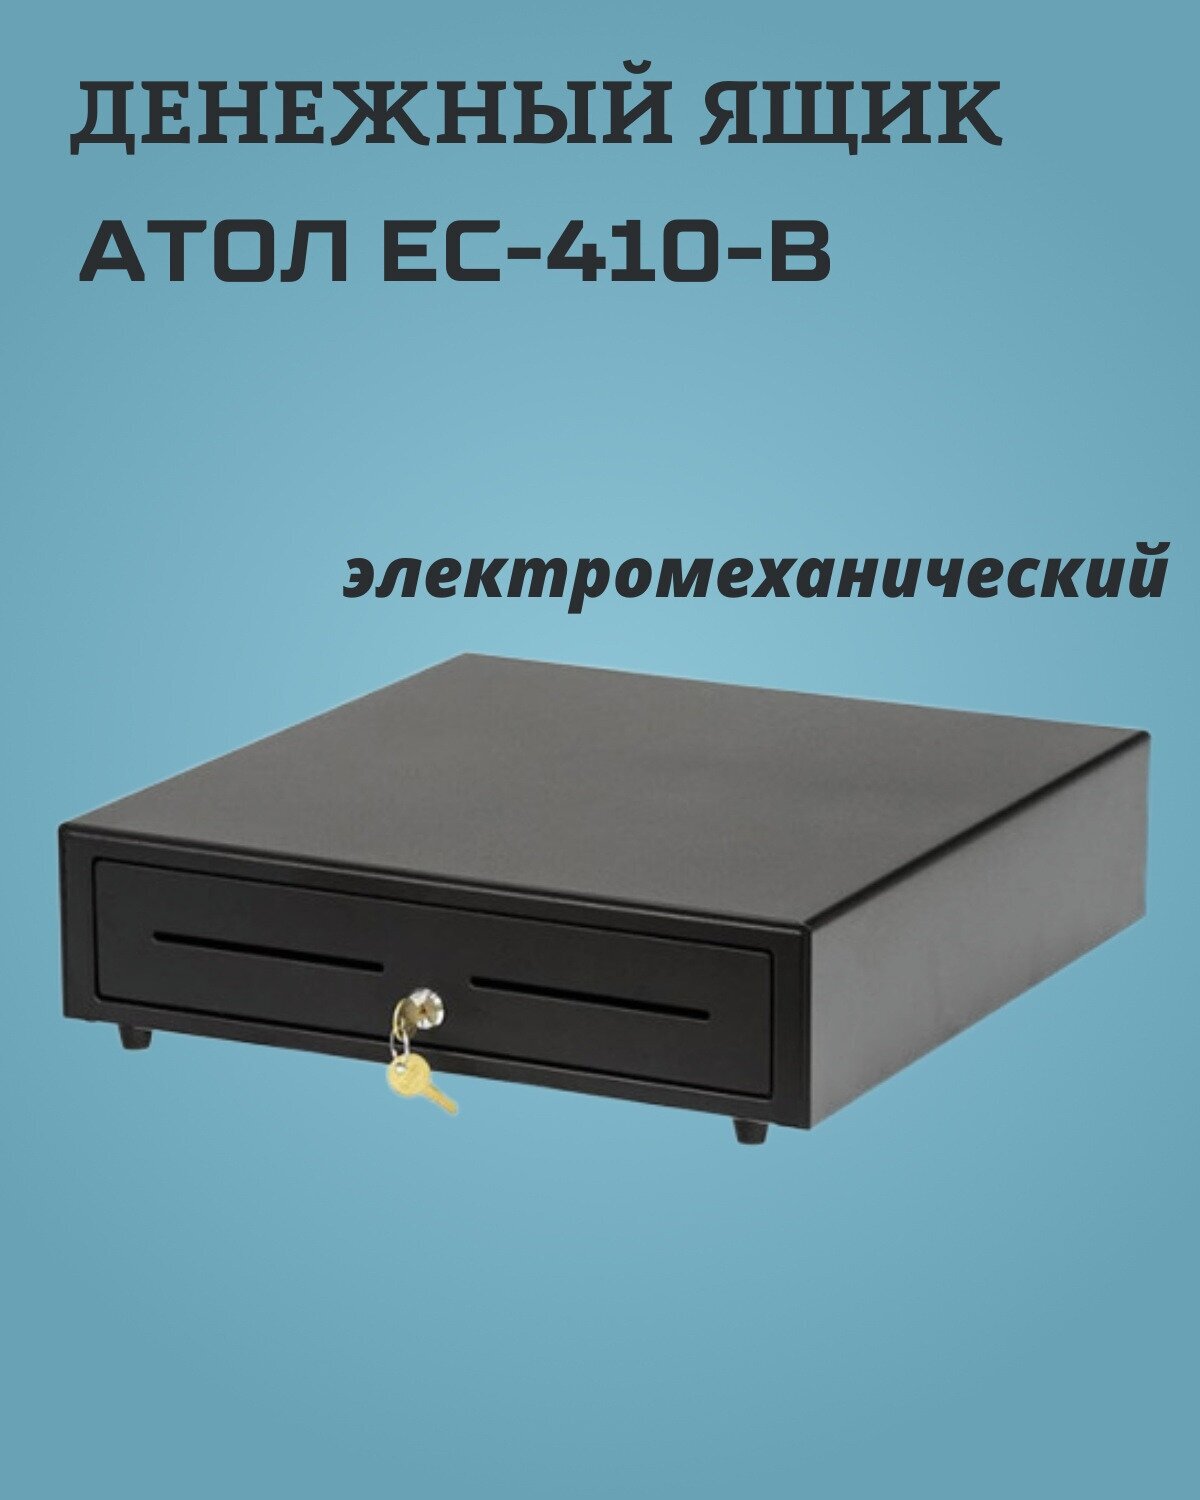 Денежный ящик АТОЛ EC-410-B / 24V электромеханический чёрный